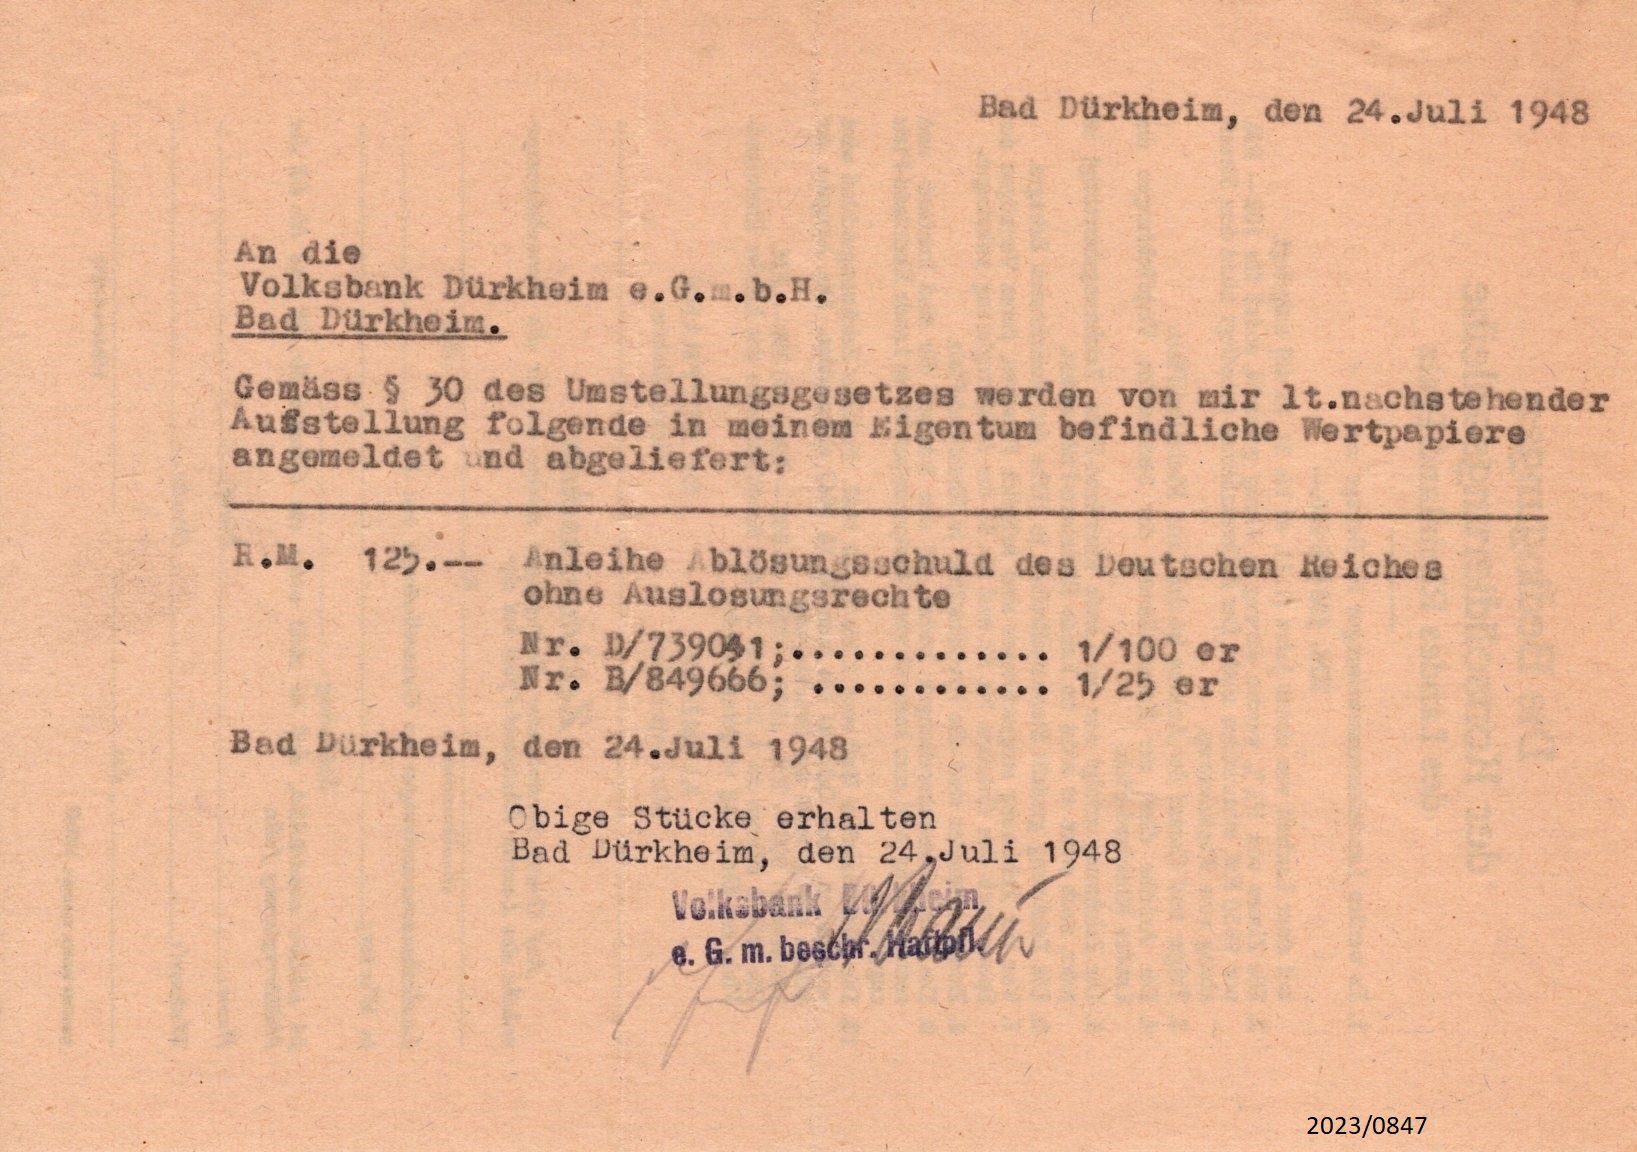 Schreiben an Volksbank Bad Dürkheim - Umstellungsgesetz 1948 (Stadtmuseum Bad Dürkheim im Kulturzentrum Haus Catoir CC BY-NC-SA)